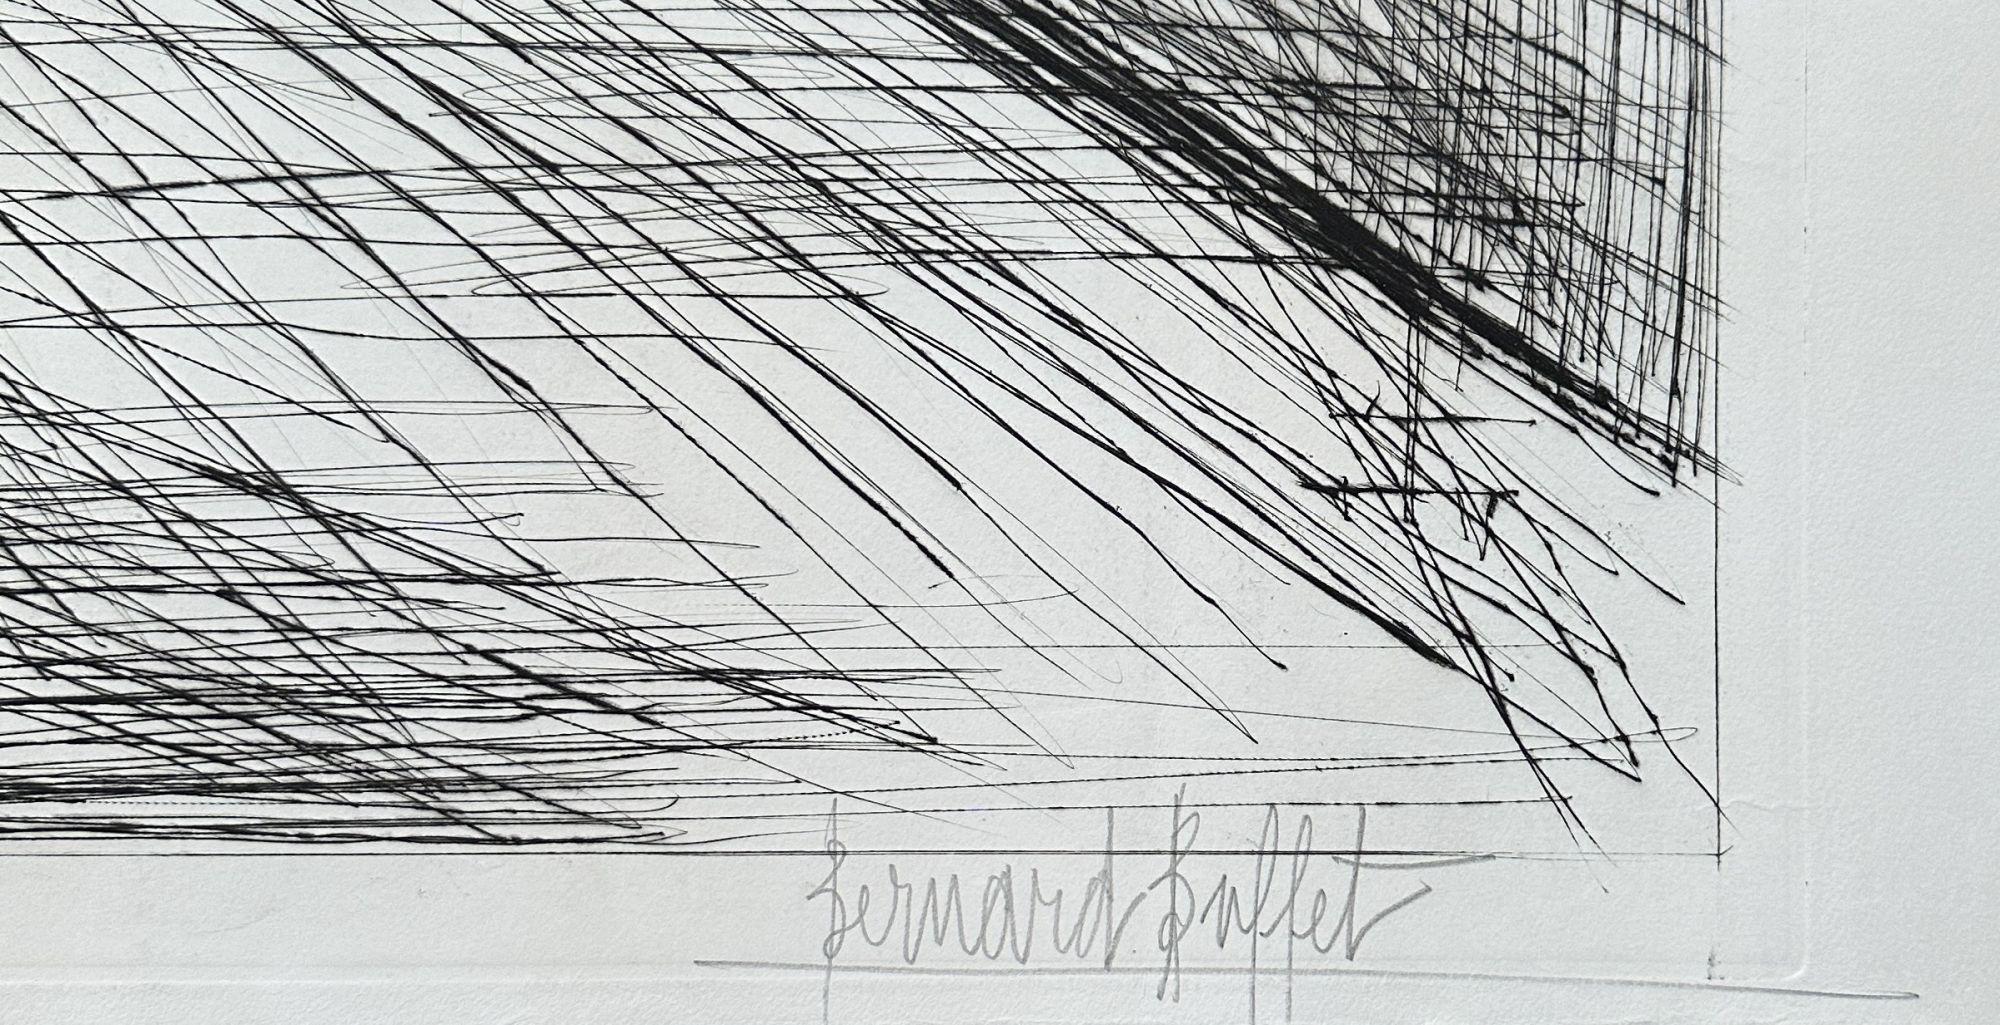 Bernard Buffet
Der Kanal, 1955

Original-Radierung
Handsigniert mit Bleistift
Nummeriert /125 Exemplare
Auf BFK Rives Vellum im Format 56 x 76,5 cm (ca. 22 x 30 Zoll)
Sehr guter Zustand

REFERENZEN : Gesamtkatalog Bernard Buffet Graveur, Referenz